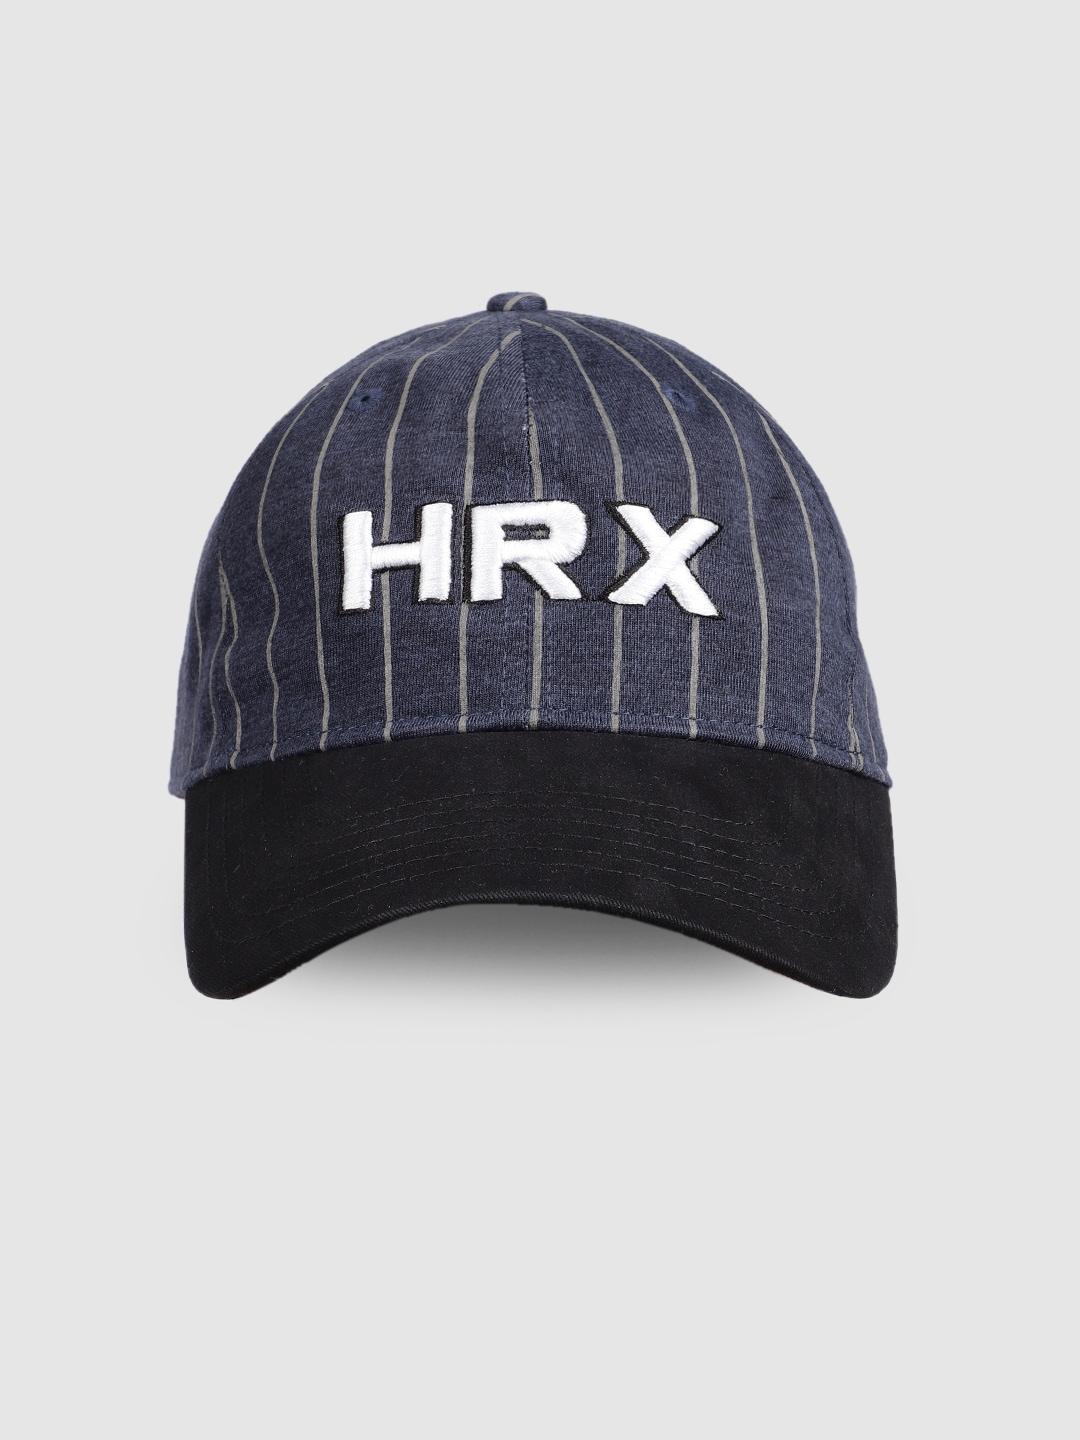 hrx-by-hrithik-roshan-unisex-black-&-blue-embroidered-baseball-cap